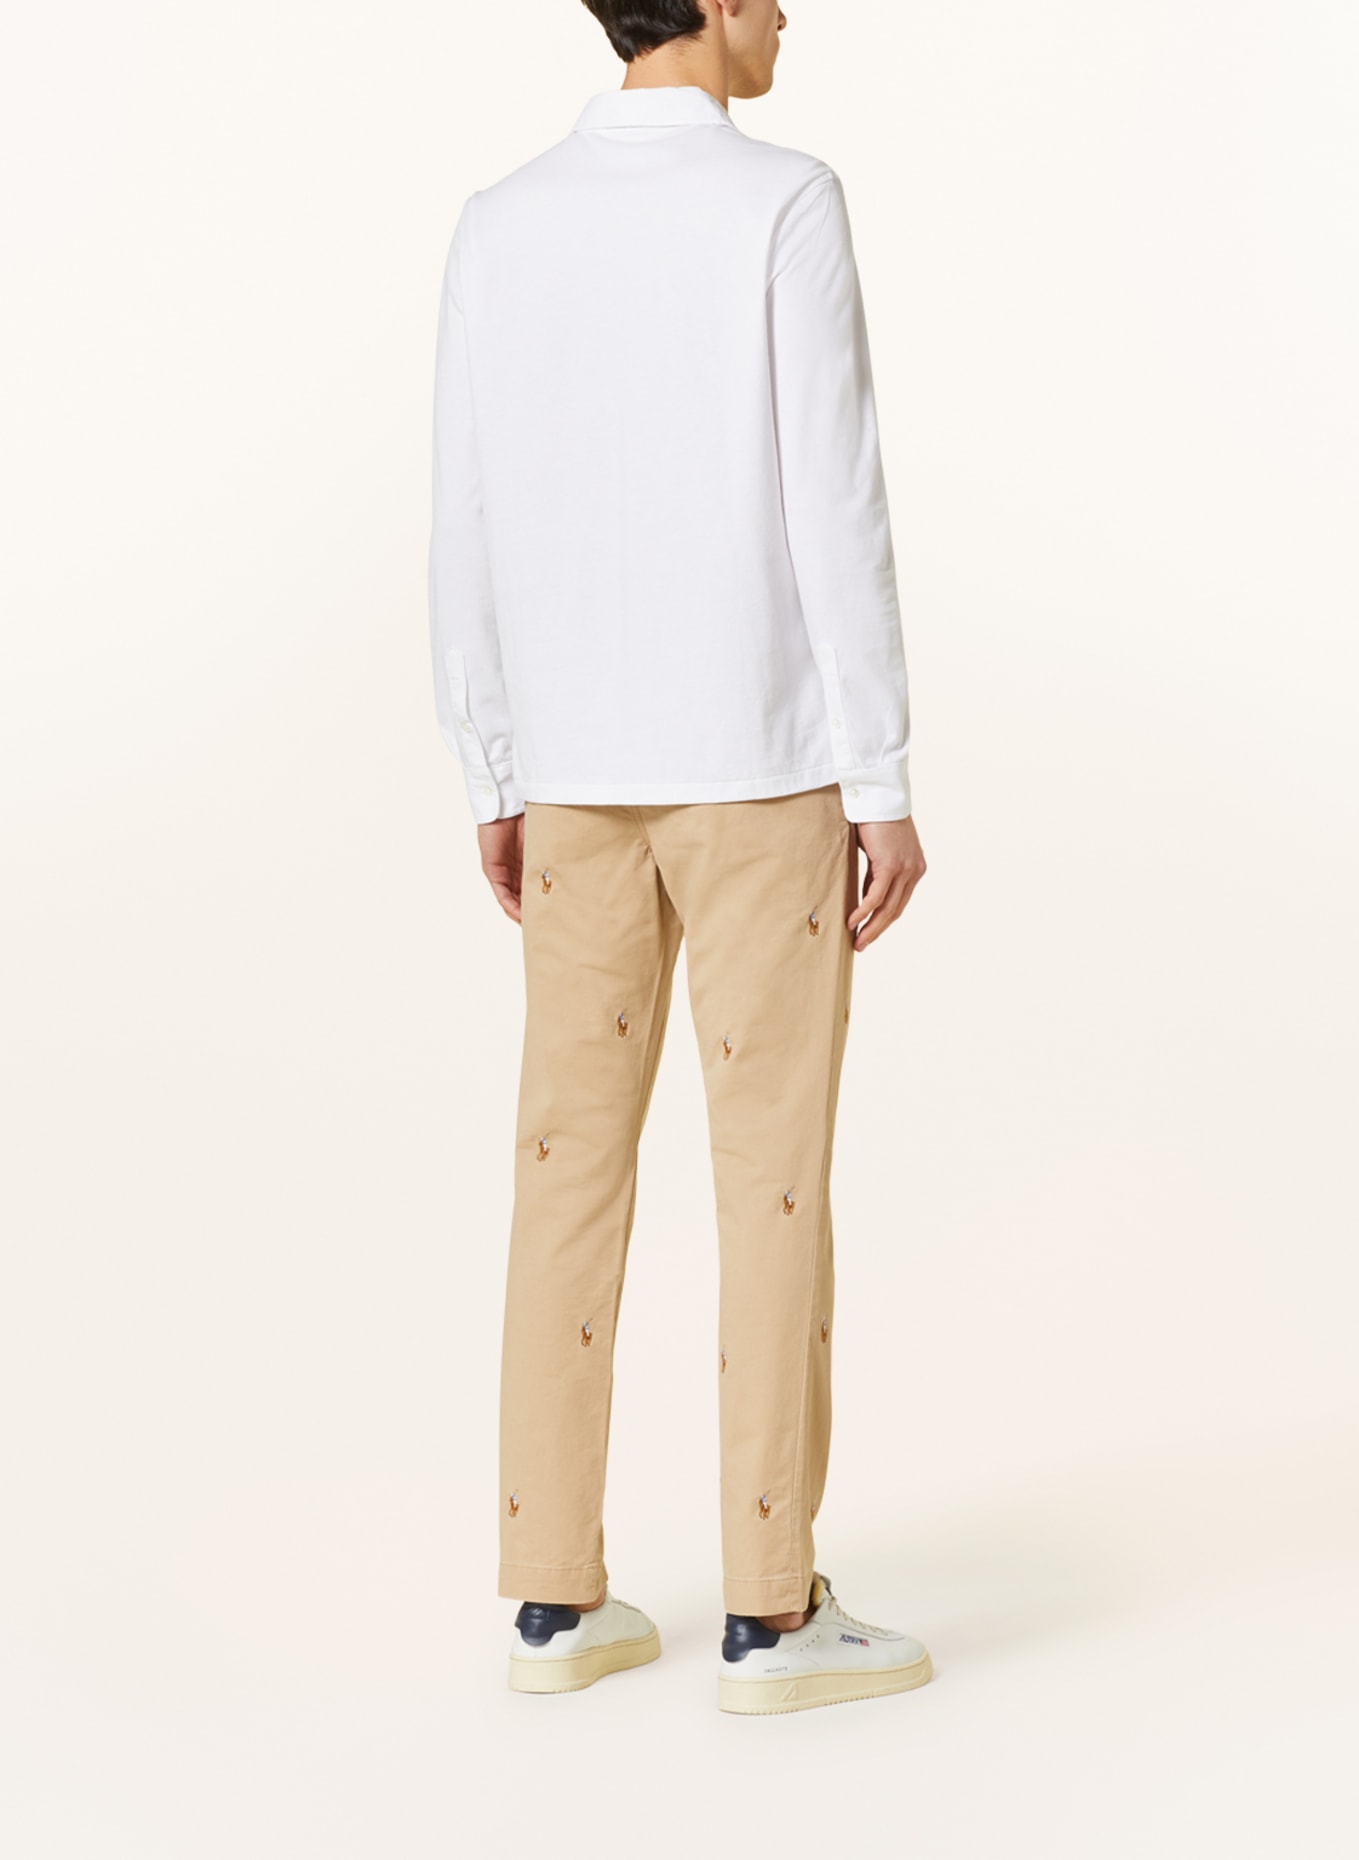 POLO RALPH LAUREN Jersey-Poloshirt Custom Slim Fit, Farbe: WEISS (Bild 3)